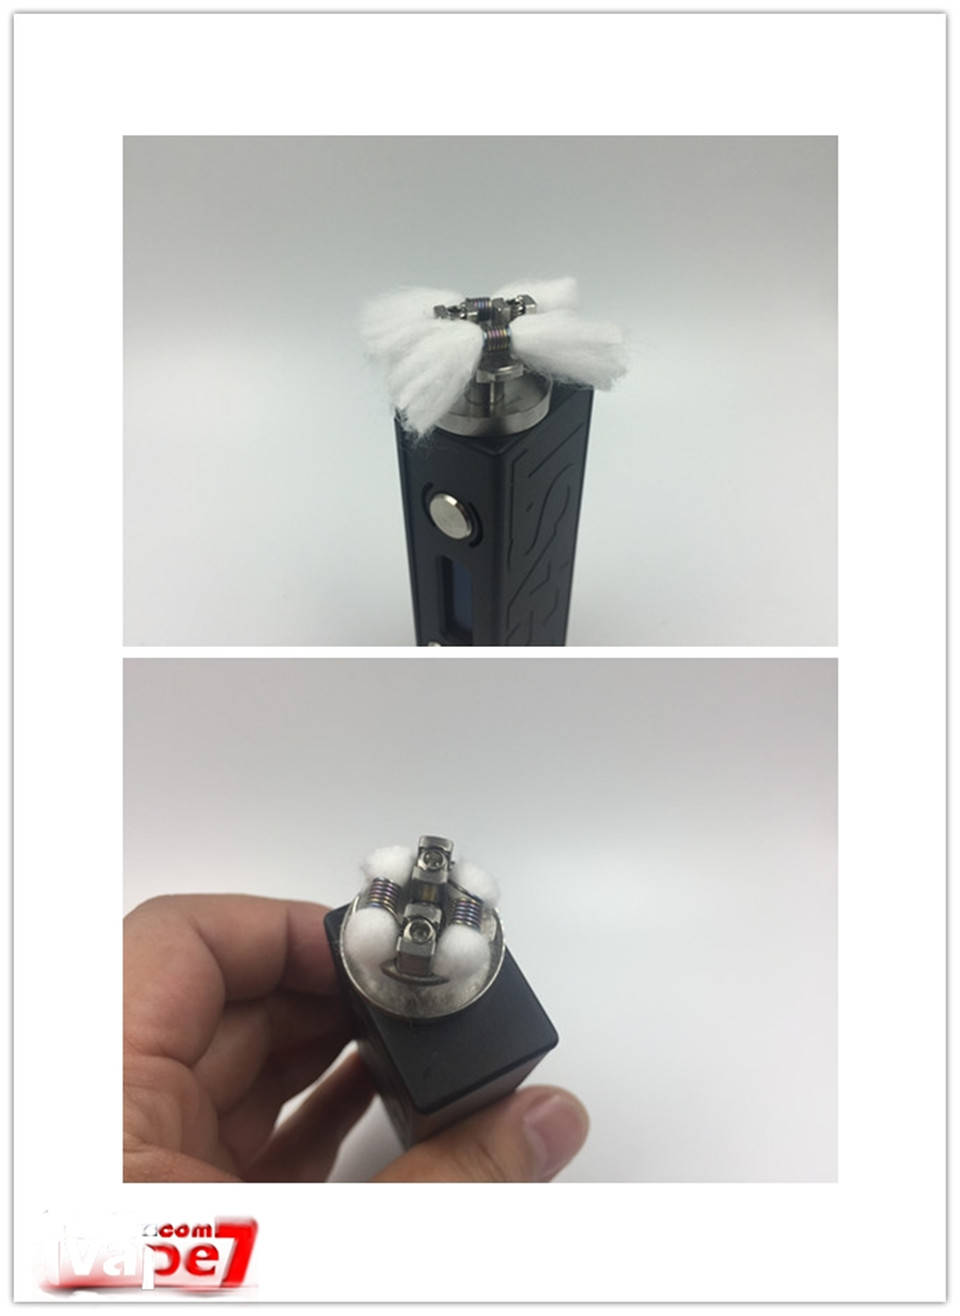 ZIGGS RDTA电子烟大烟雾滴油雾化器评测 使用分享-文章实验基地